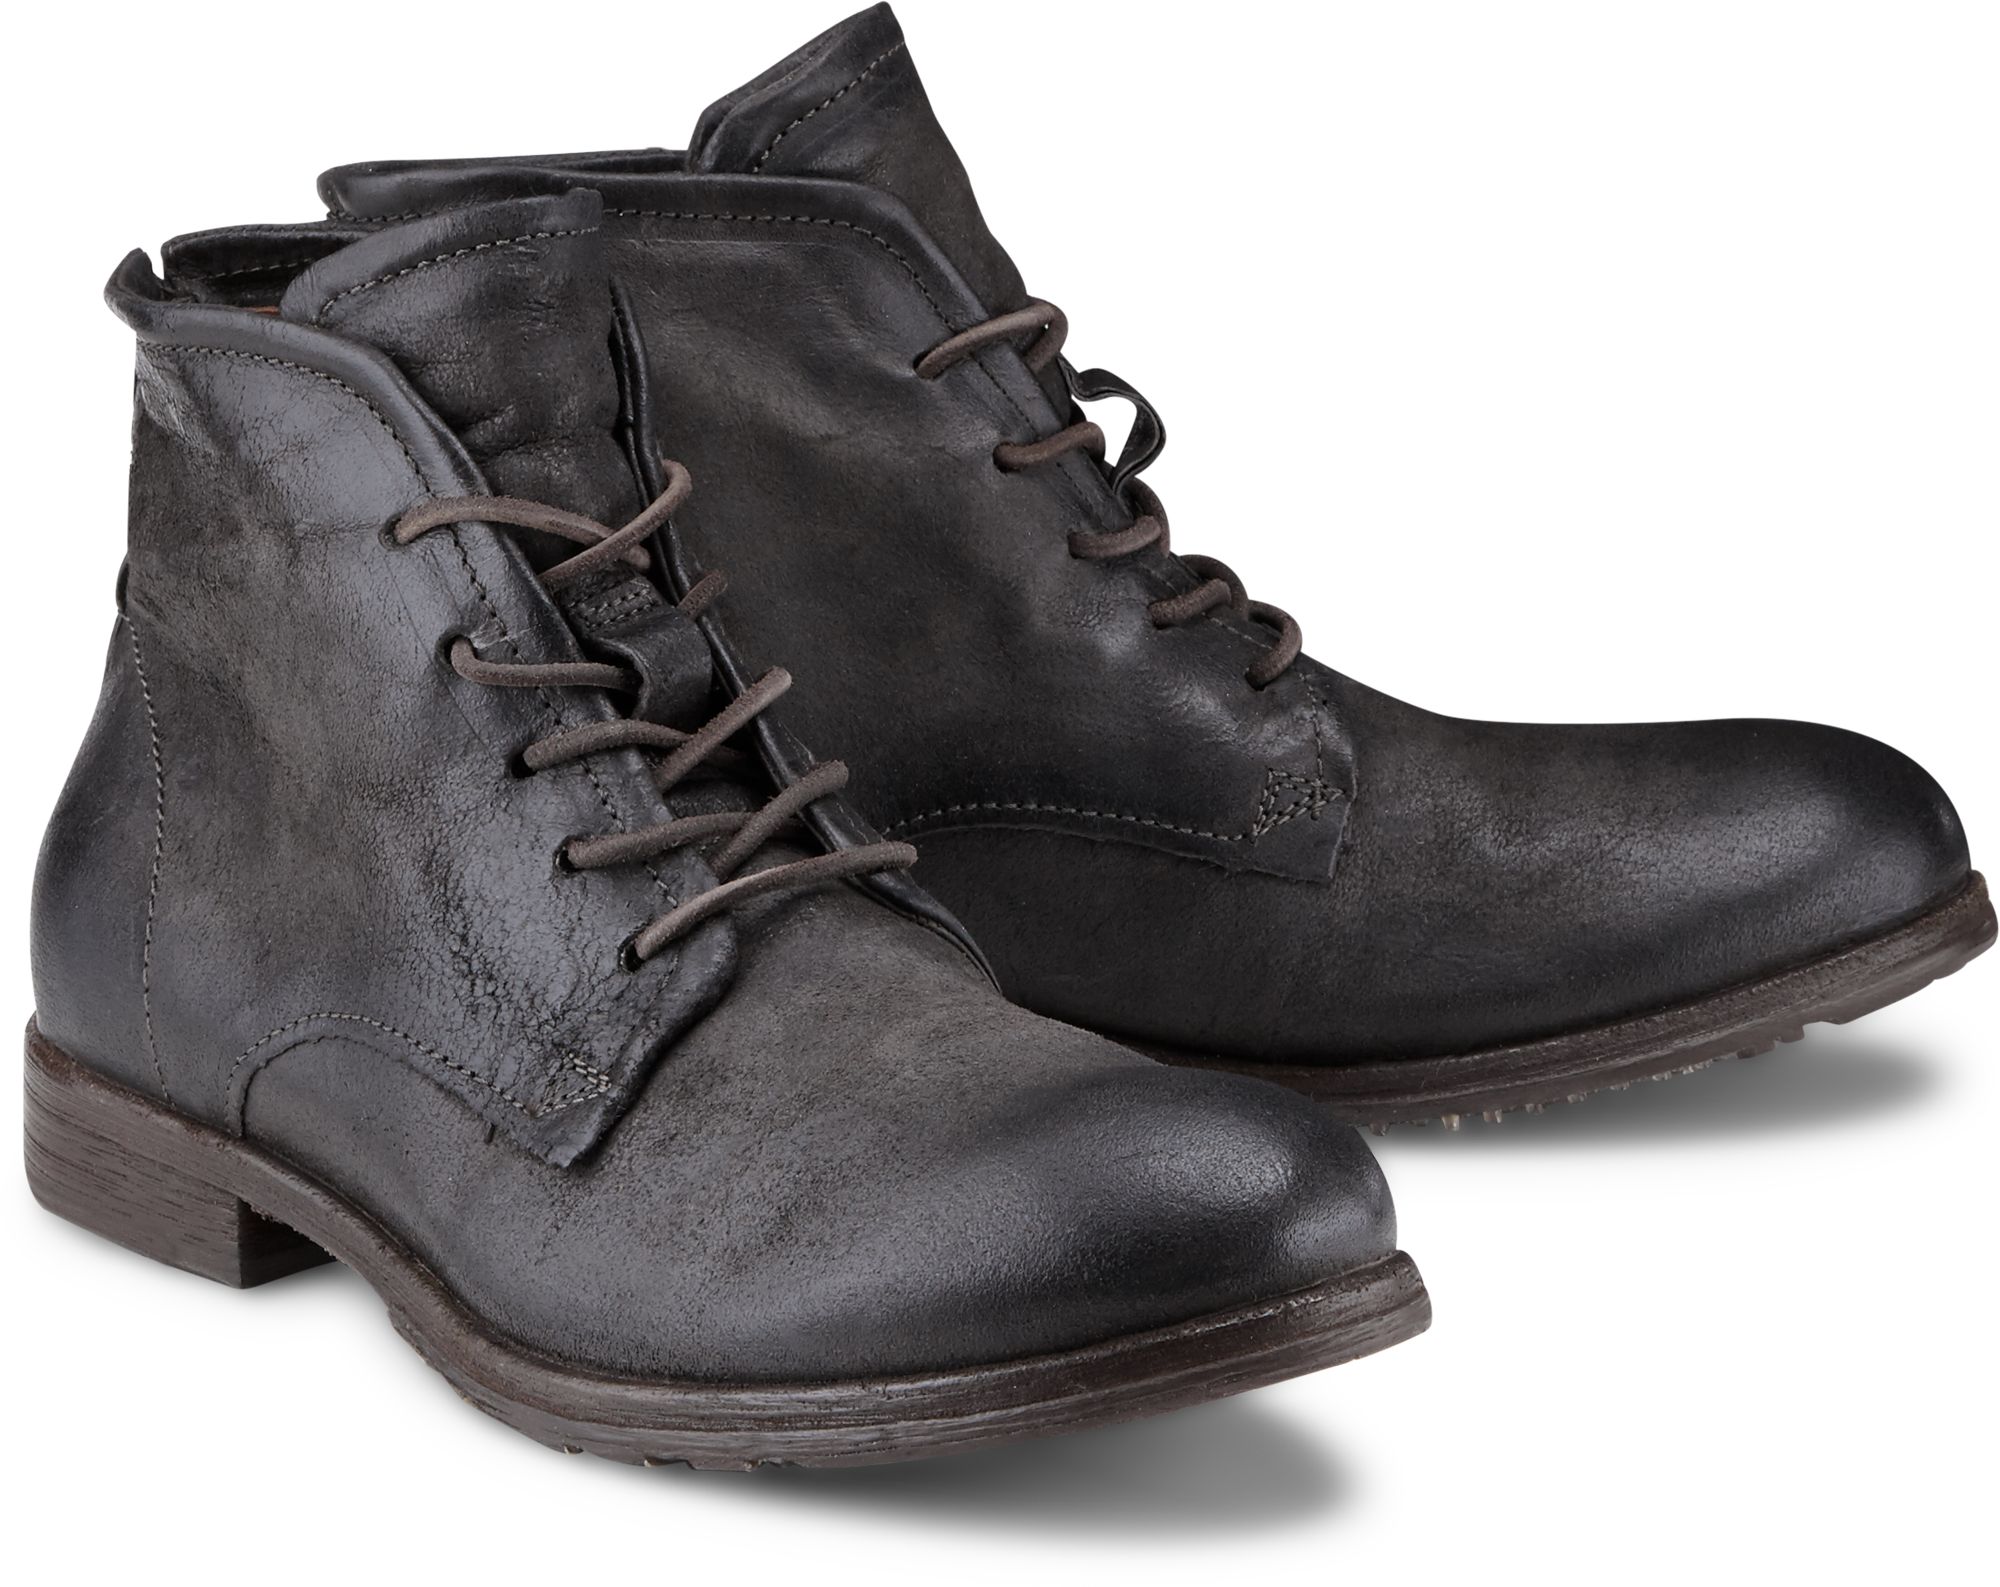 Mutton Marked index finger Boots CLASH von A.S. 98 in grau dunkel für Herren. Gr. 41,42,43,44,45  Schuhe online kaufen